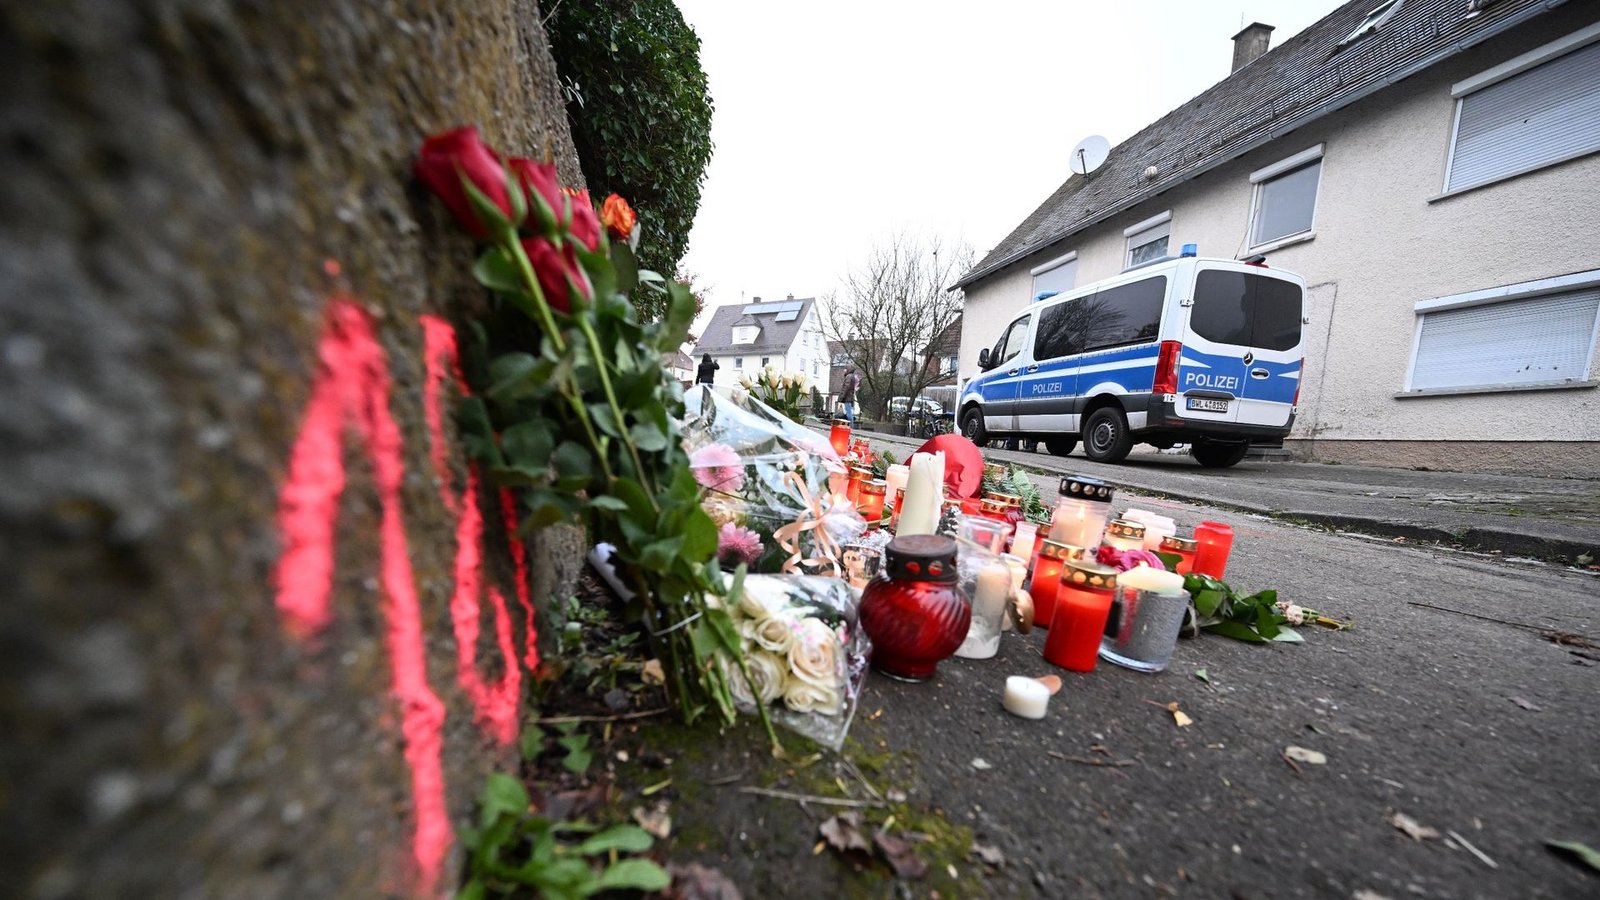 Kerzen und Blumen am Tatort, an dem zwei Mädchen von einem Mann mit einem Messer angegriffen wurden. Eines der Mädchen starb.Foto: Bernd Weißbrod/dpa